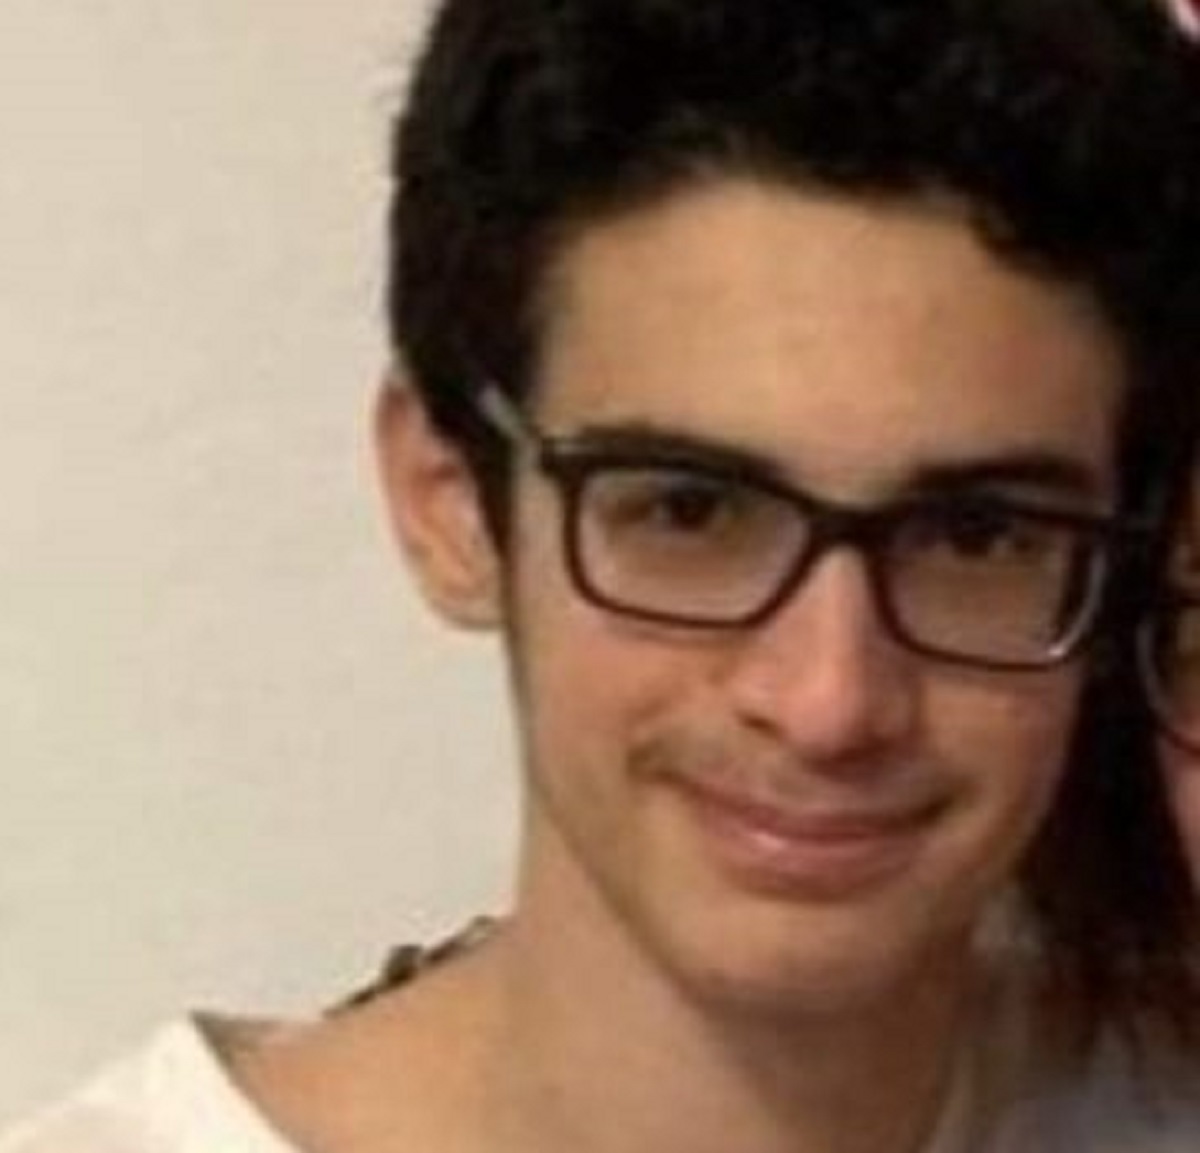 Pesaro Emanuele Pucci Nicholas Urbinati 16 anni scomparsi ritrovamento